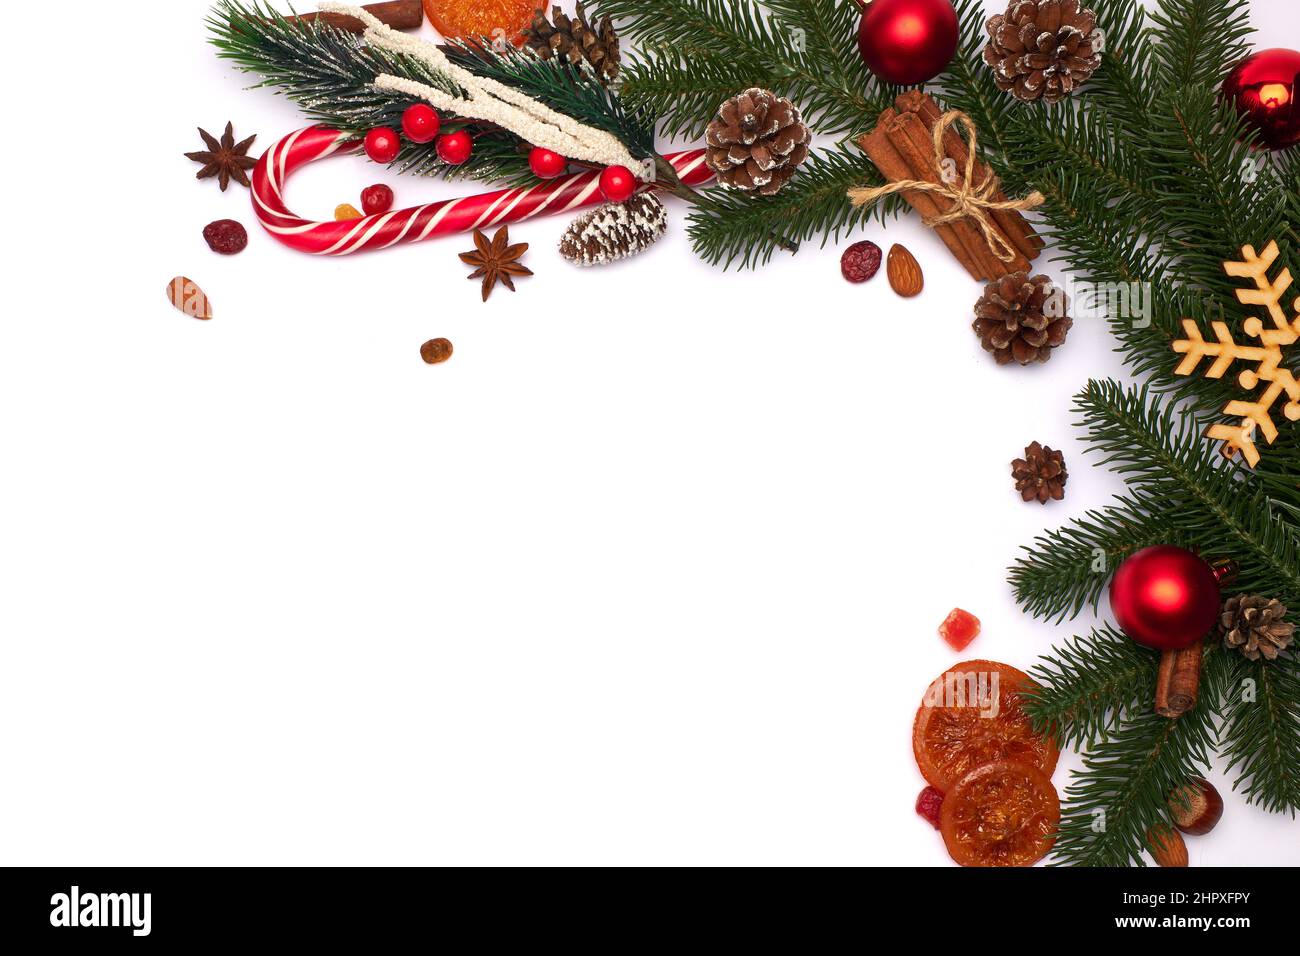 Rahmen oder Rahmen für Weihnachten und Neujahr auf weißem Hintergrund  Stockfotografie - Alamy